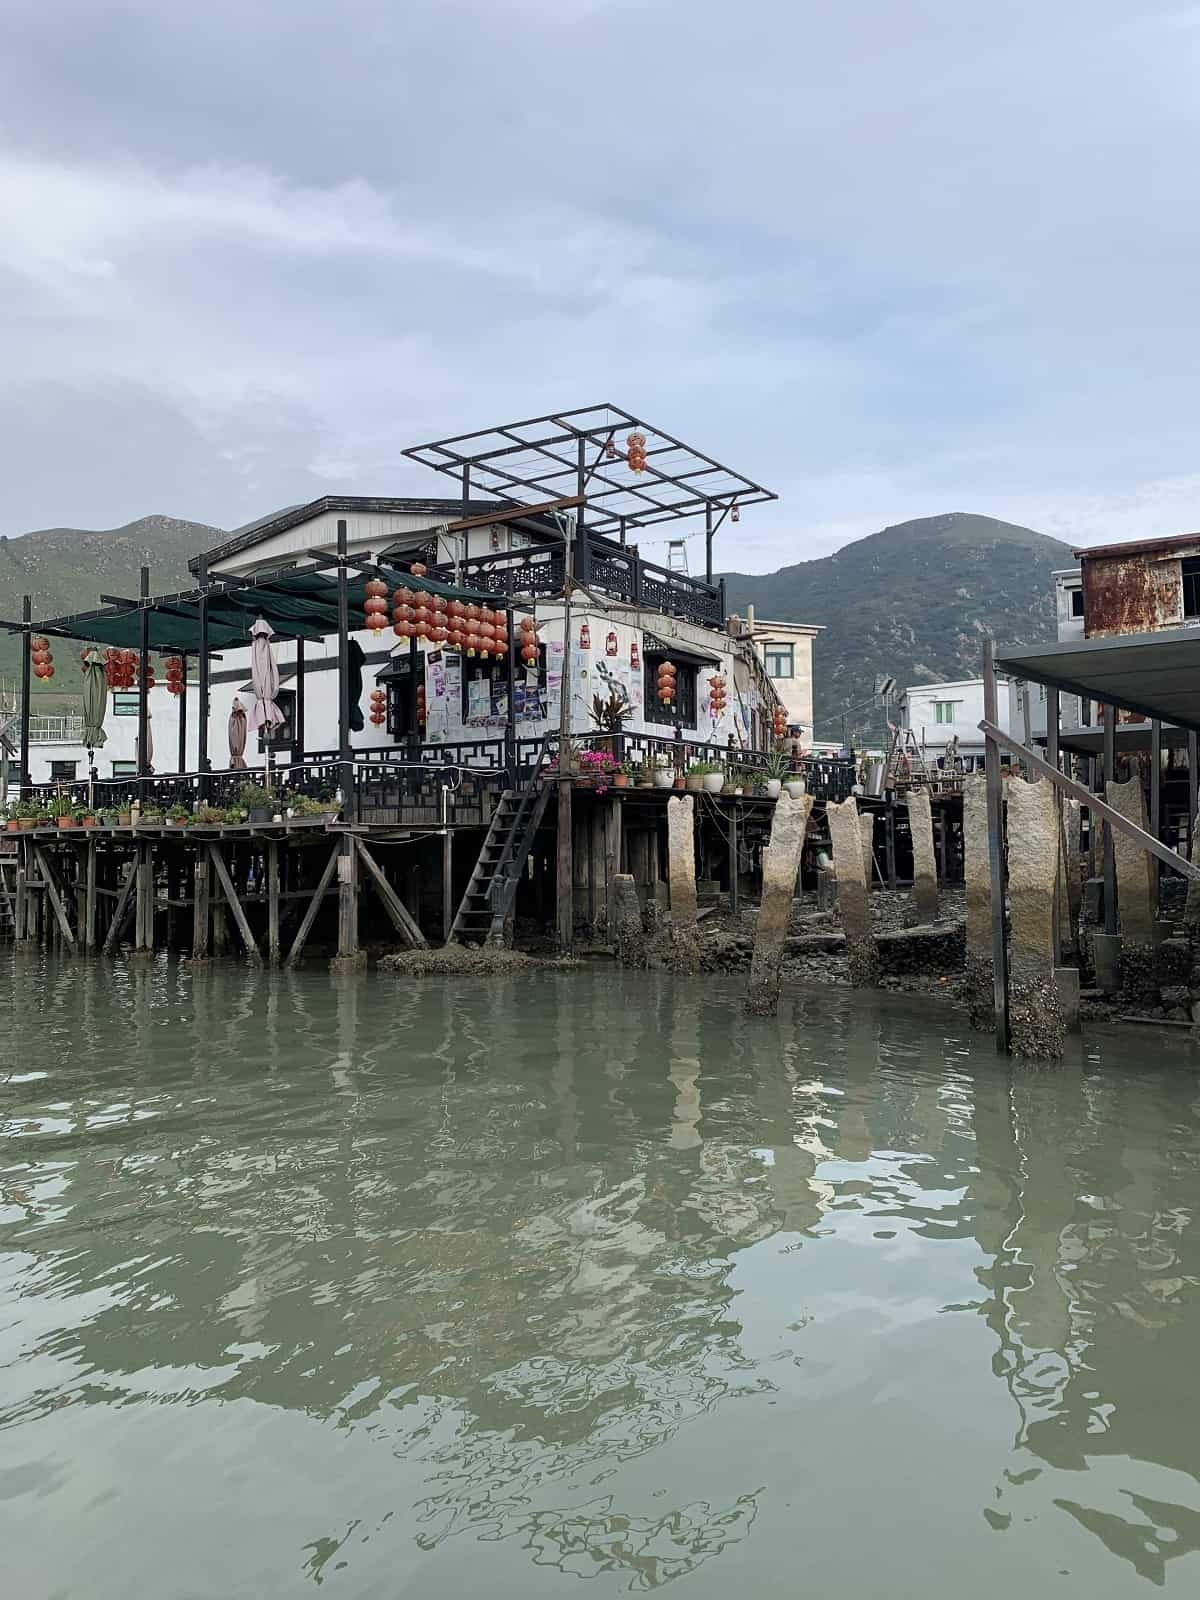 Tai O fishing village in Lantau